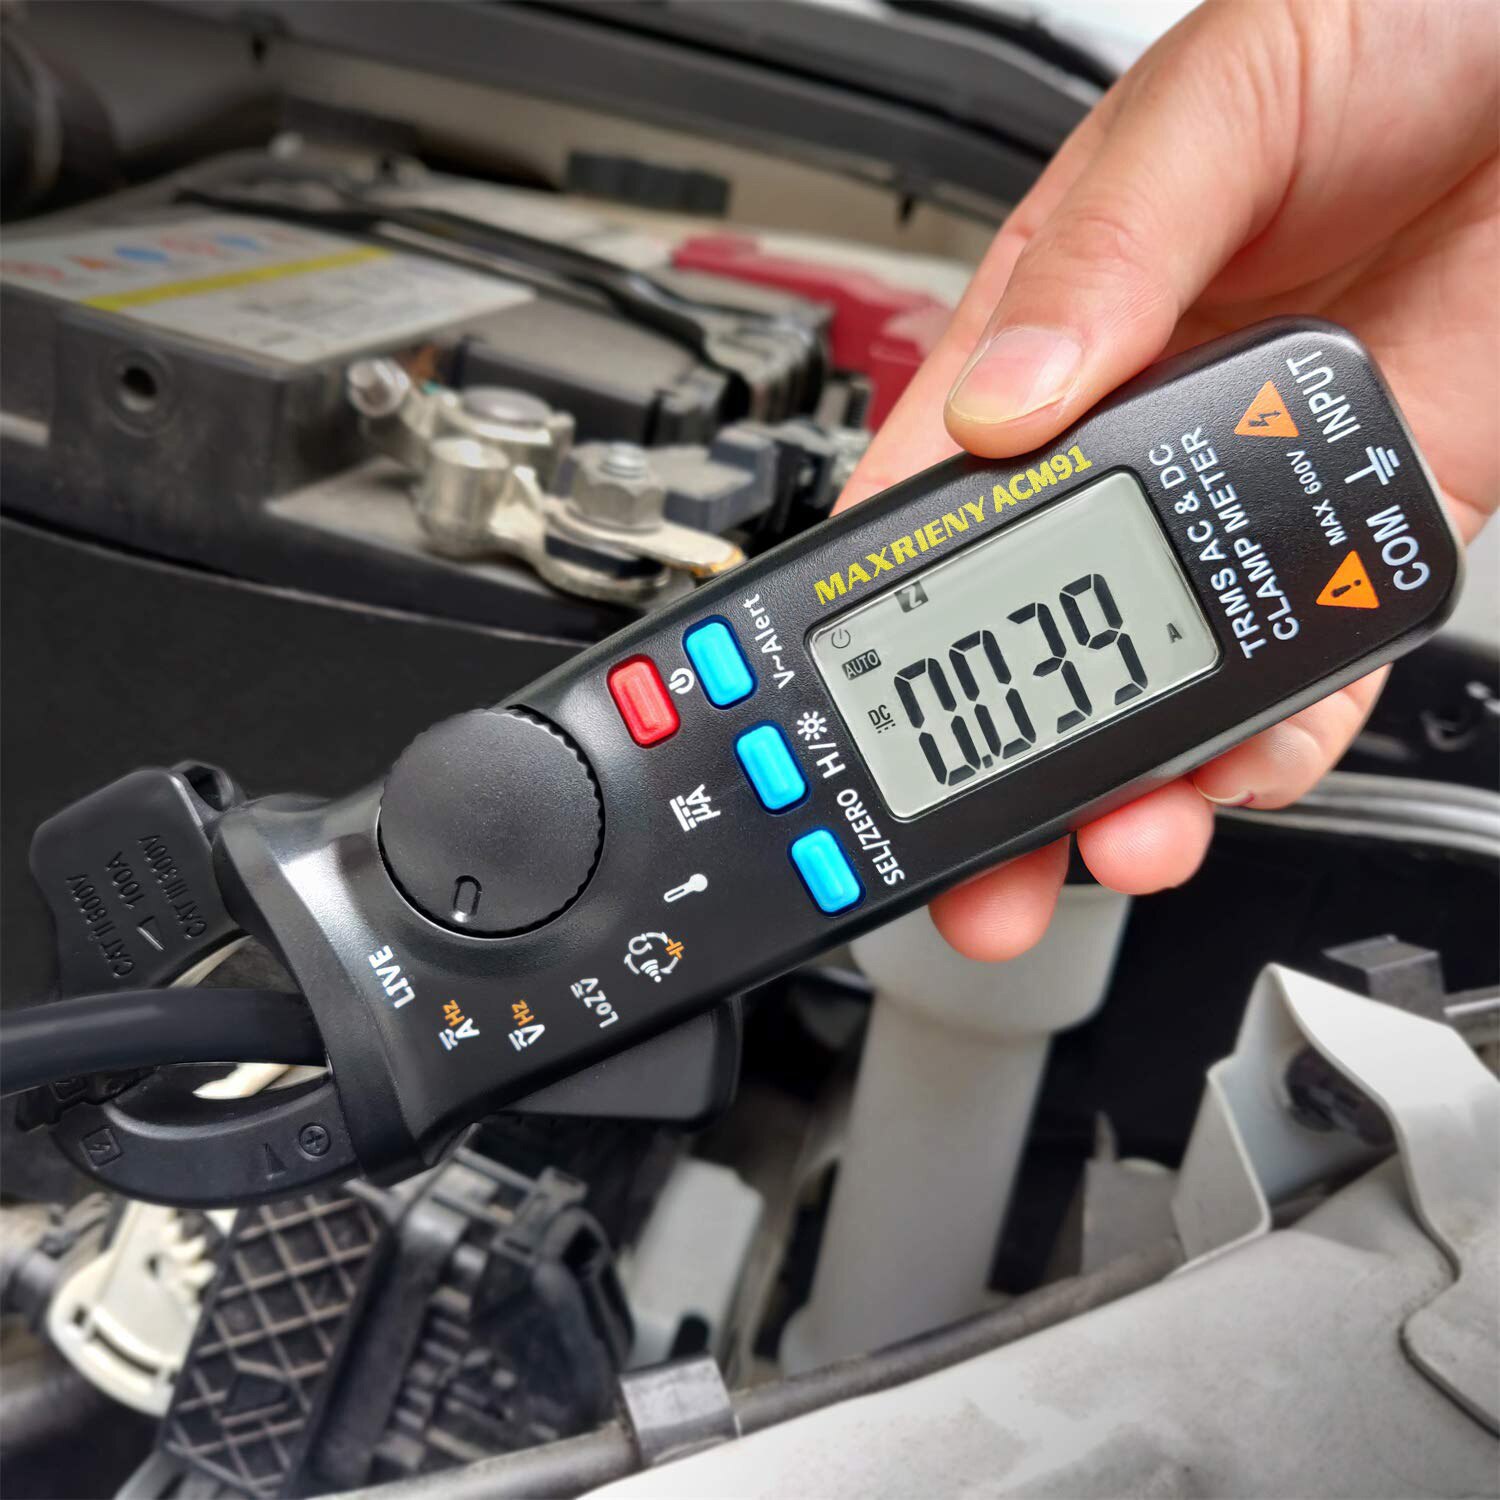 Acm 91 digital auto rækkevidde klemme meter ac / dc spænding strøm modstand kapacitans temperatur frekvens tester pro multimeter